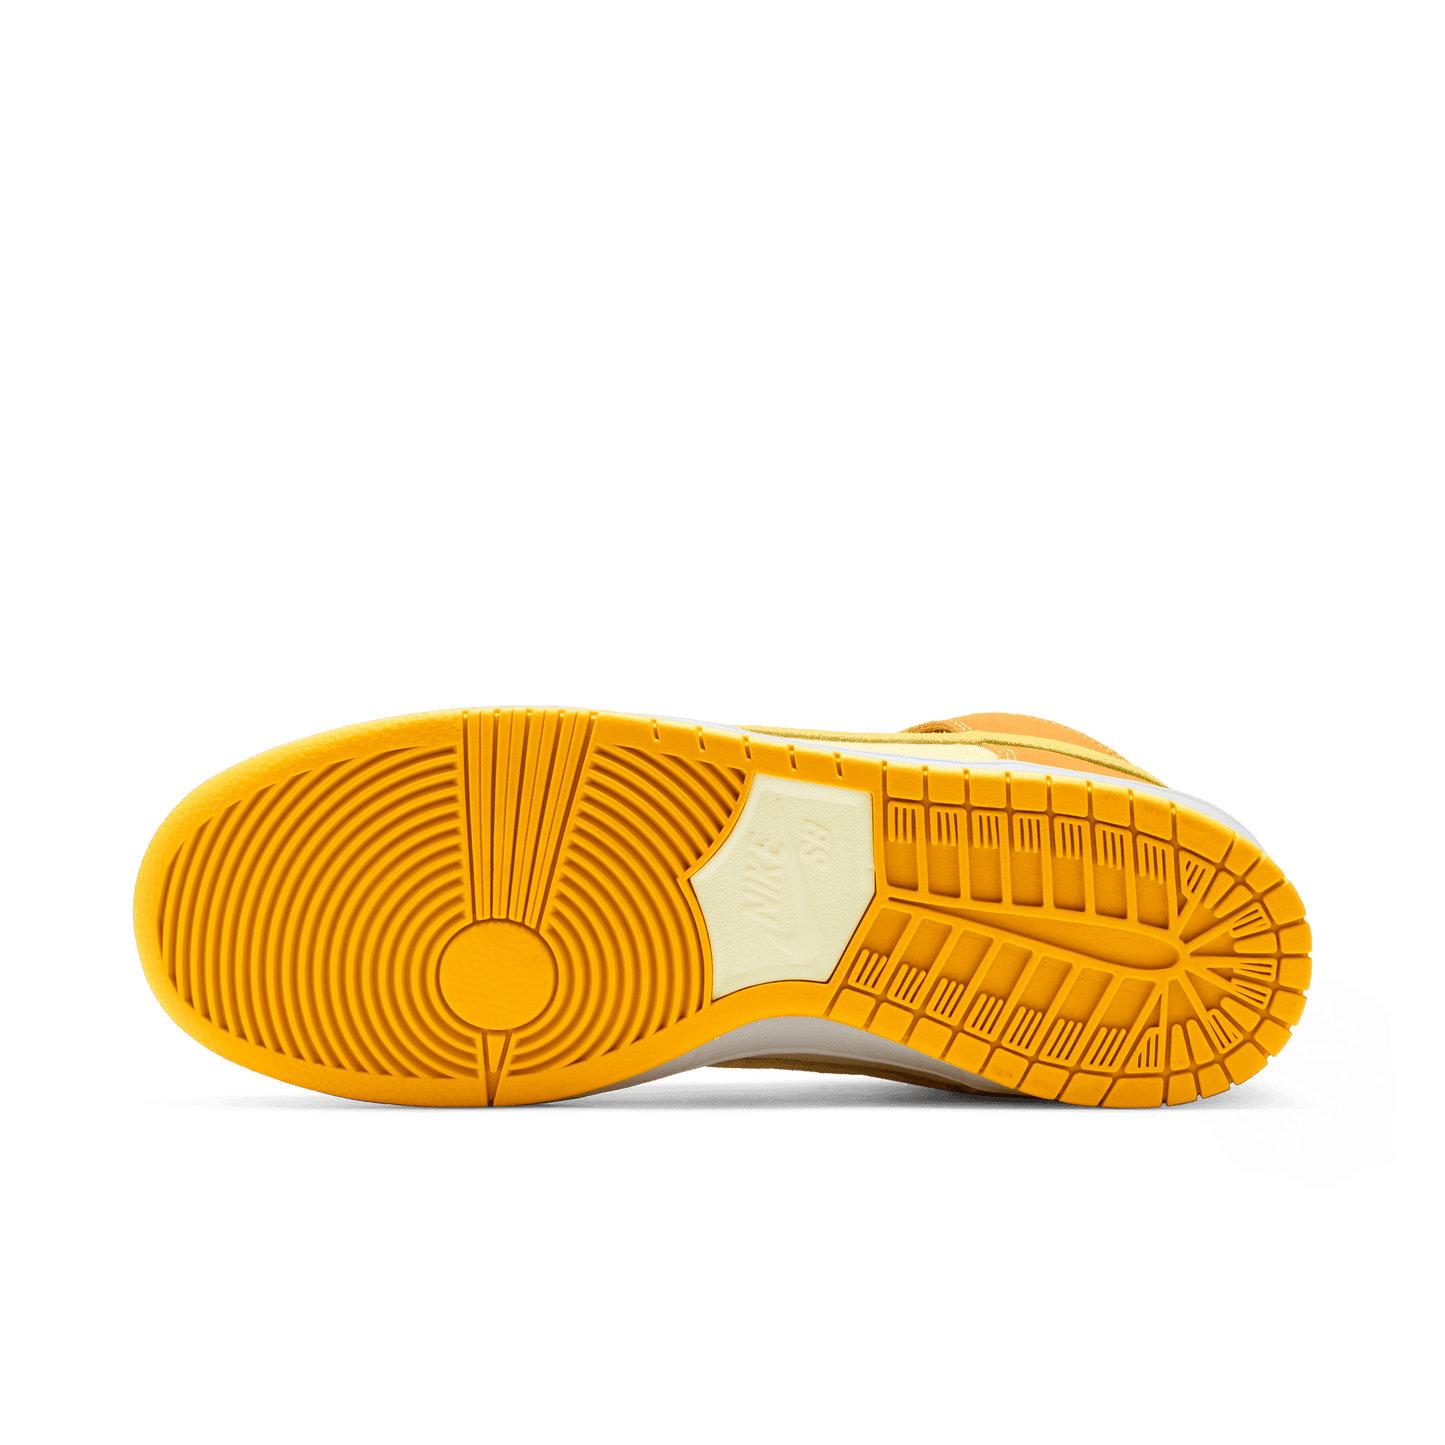 Nike SB Dunk High Pro QS "Fruit Pack Pineapple" university gold vivid sulfur citron tint